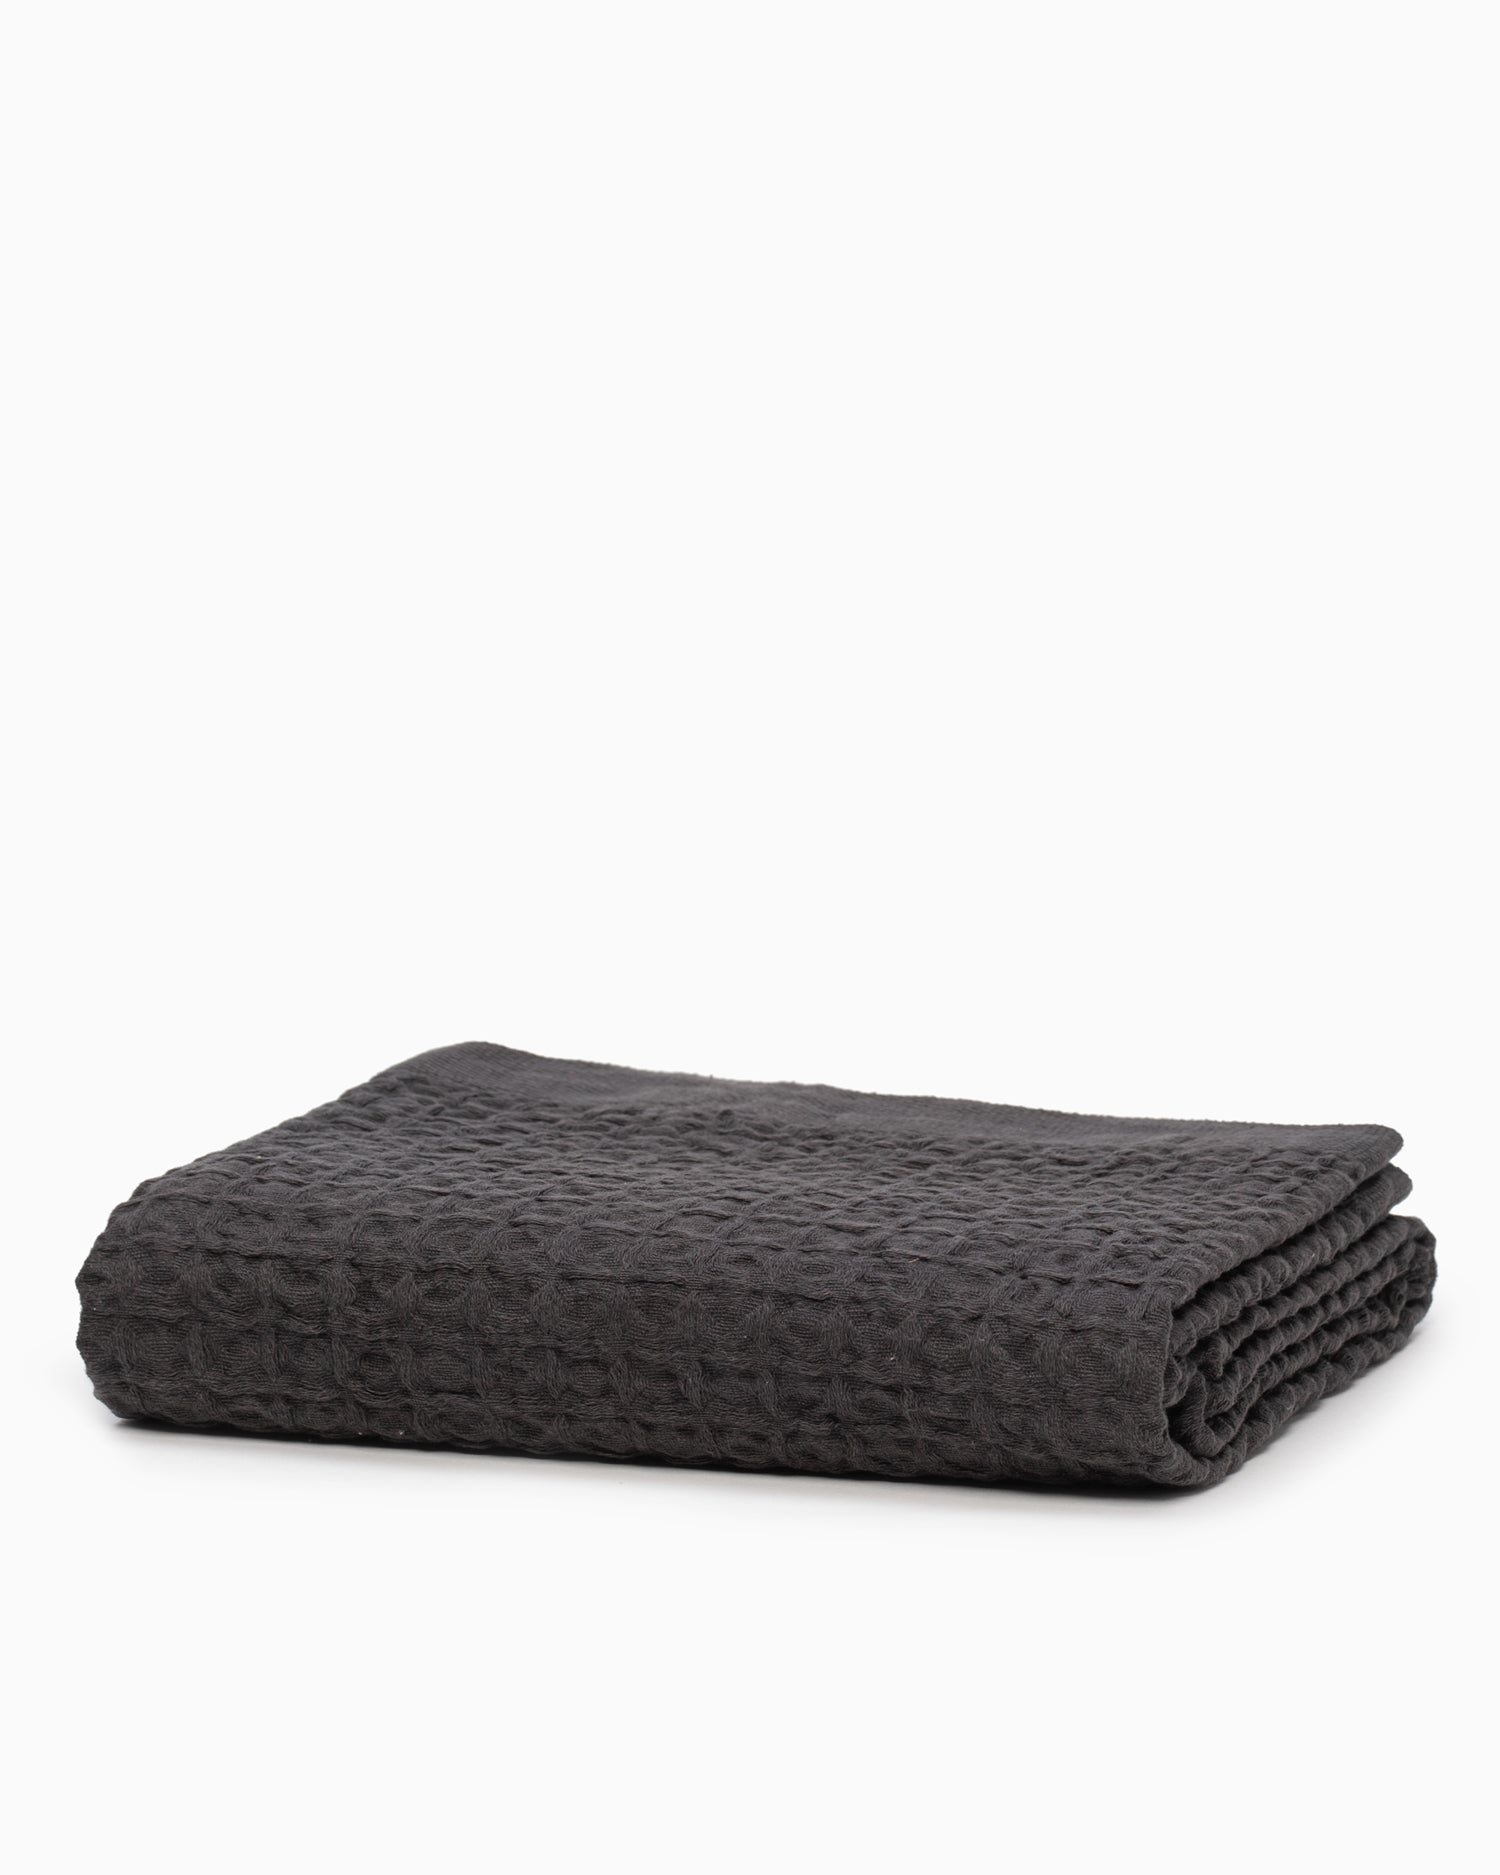 Lattice Linen Bath Towel - Charcoal